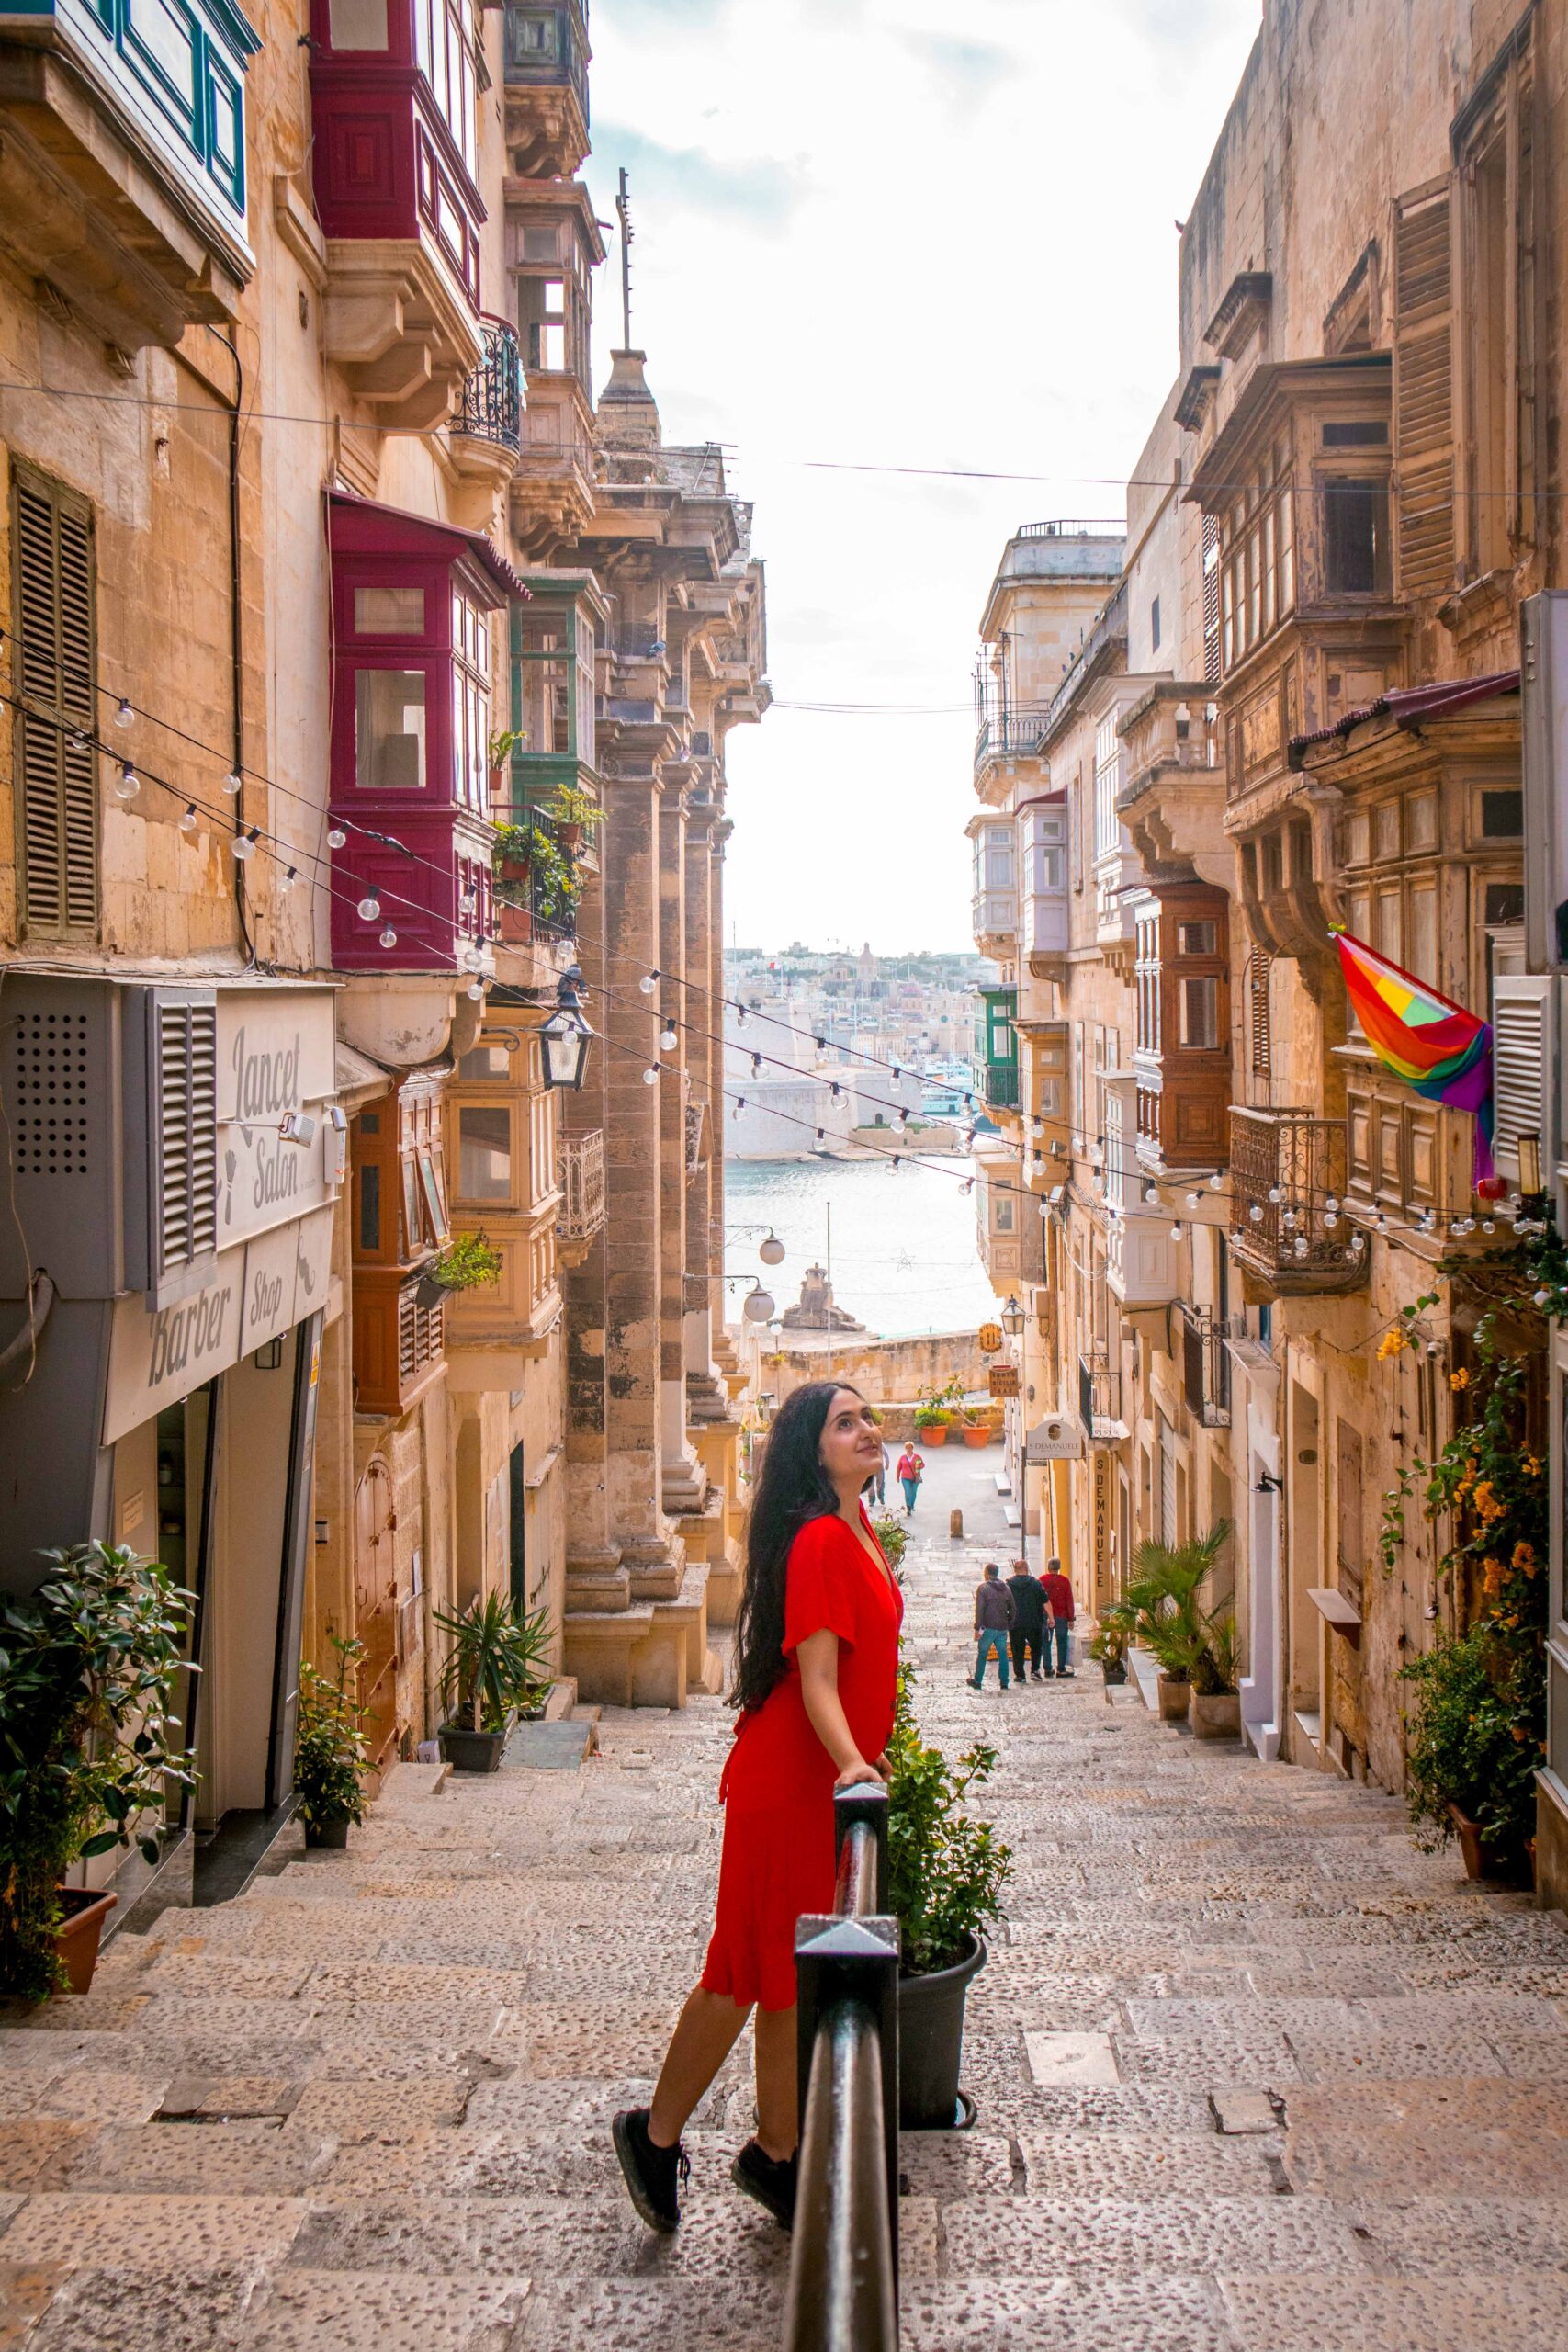 Woman wearing a red dress in the street of Triq San Gwann in Valletta, Malta